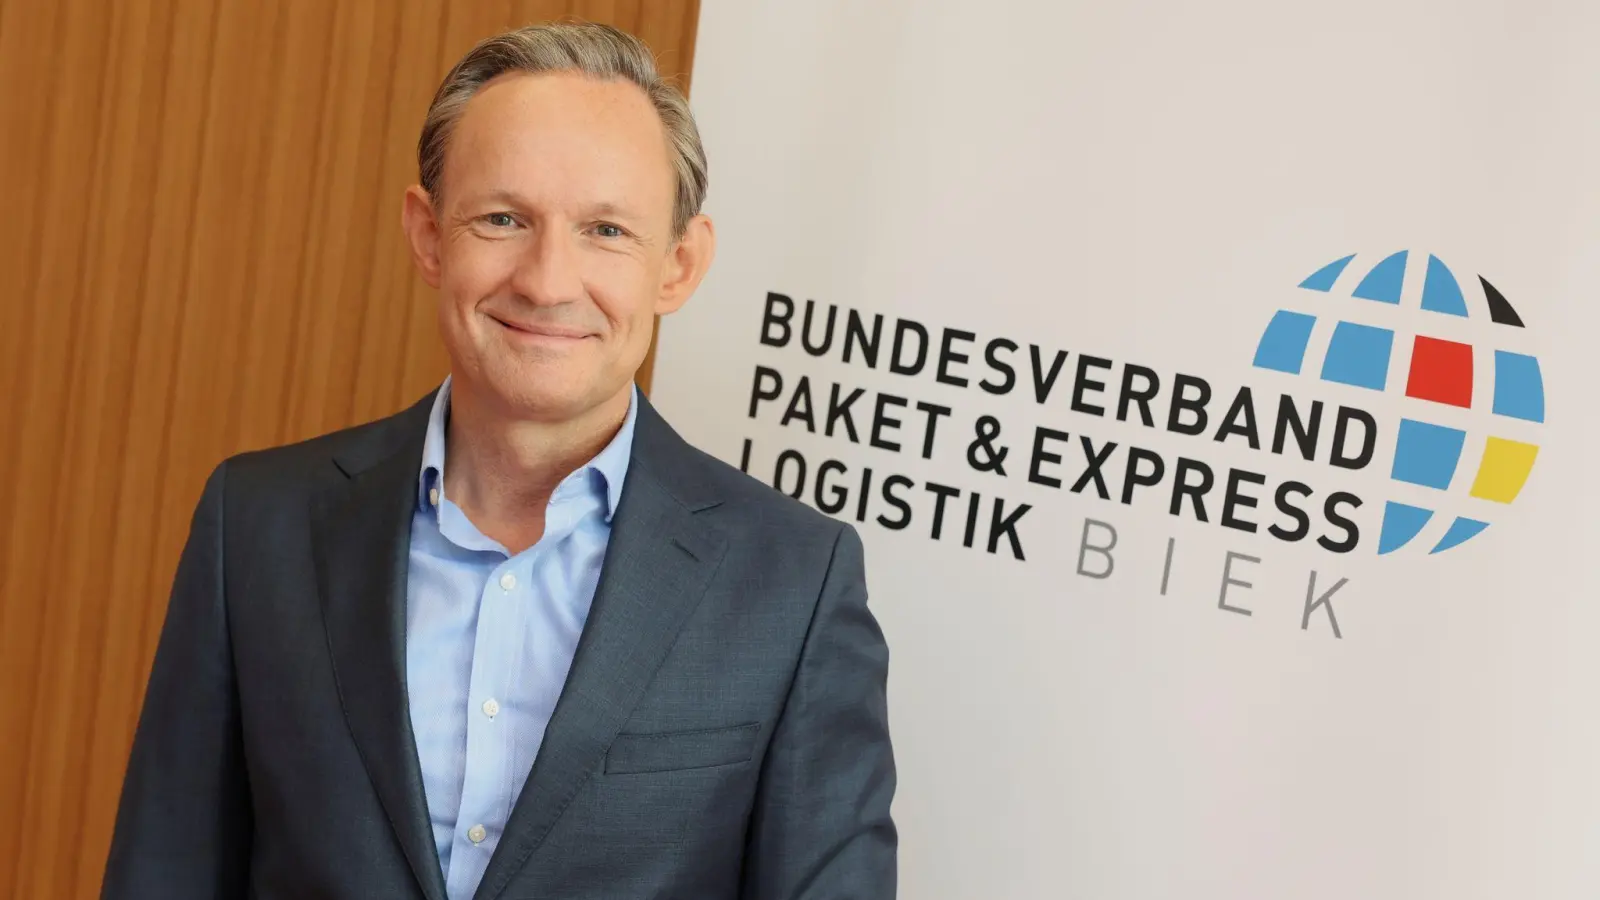 Marten Bosselmann stellte die Post- und Paket-Studie des Branchenverbandes Biek  vor. (Foto: Joerg Carstensen/dpa)